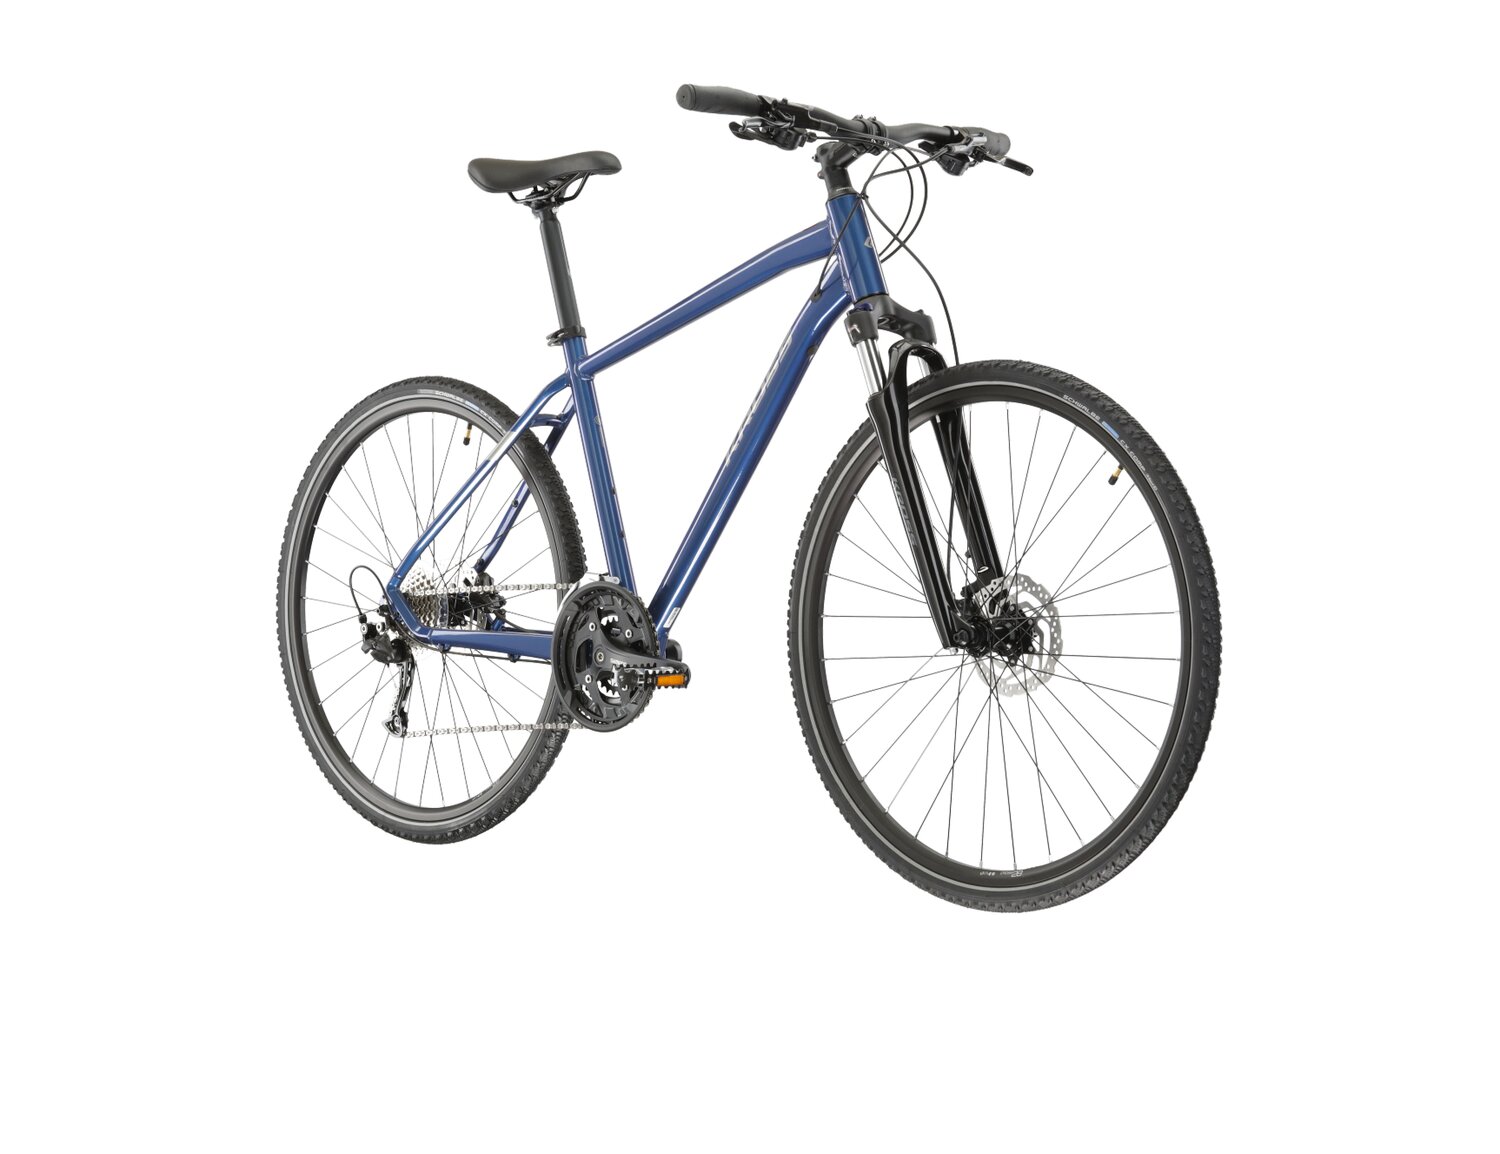  Rower crossowy KROSS Evado 6.0 na aluminiowej ramie w kolorze niebieskim wyposażony w osprzęt Shimano